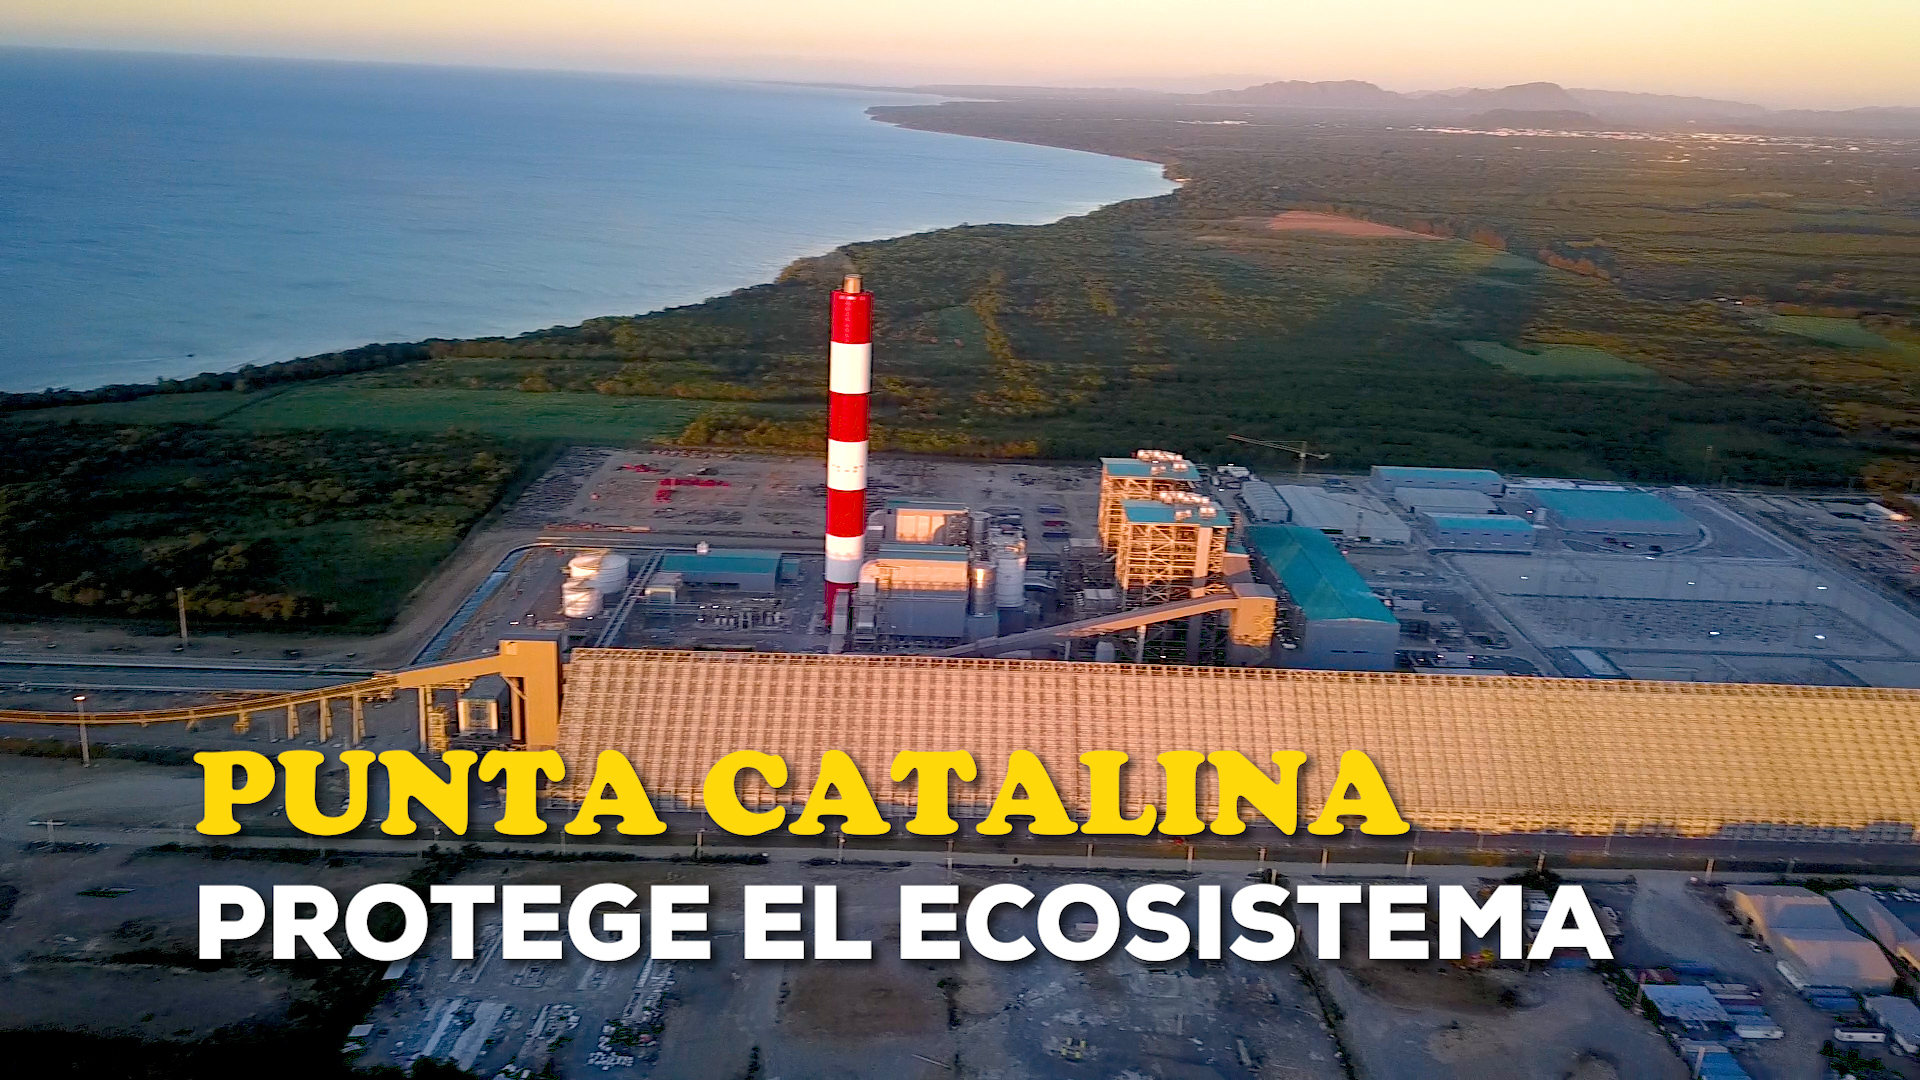 REPÚBLICA DOMINICANA: Punta Catalina protege el ecosistema. Devuelve el agua que usa cuidando el medio ambiente.